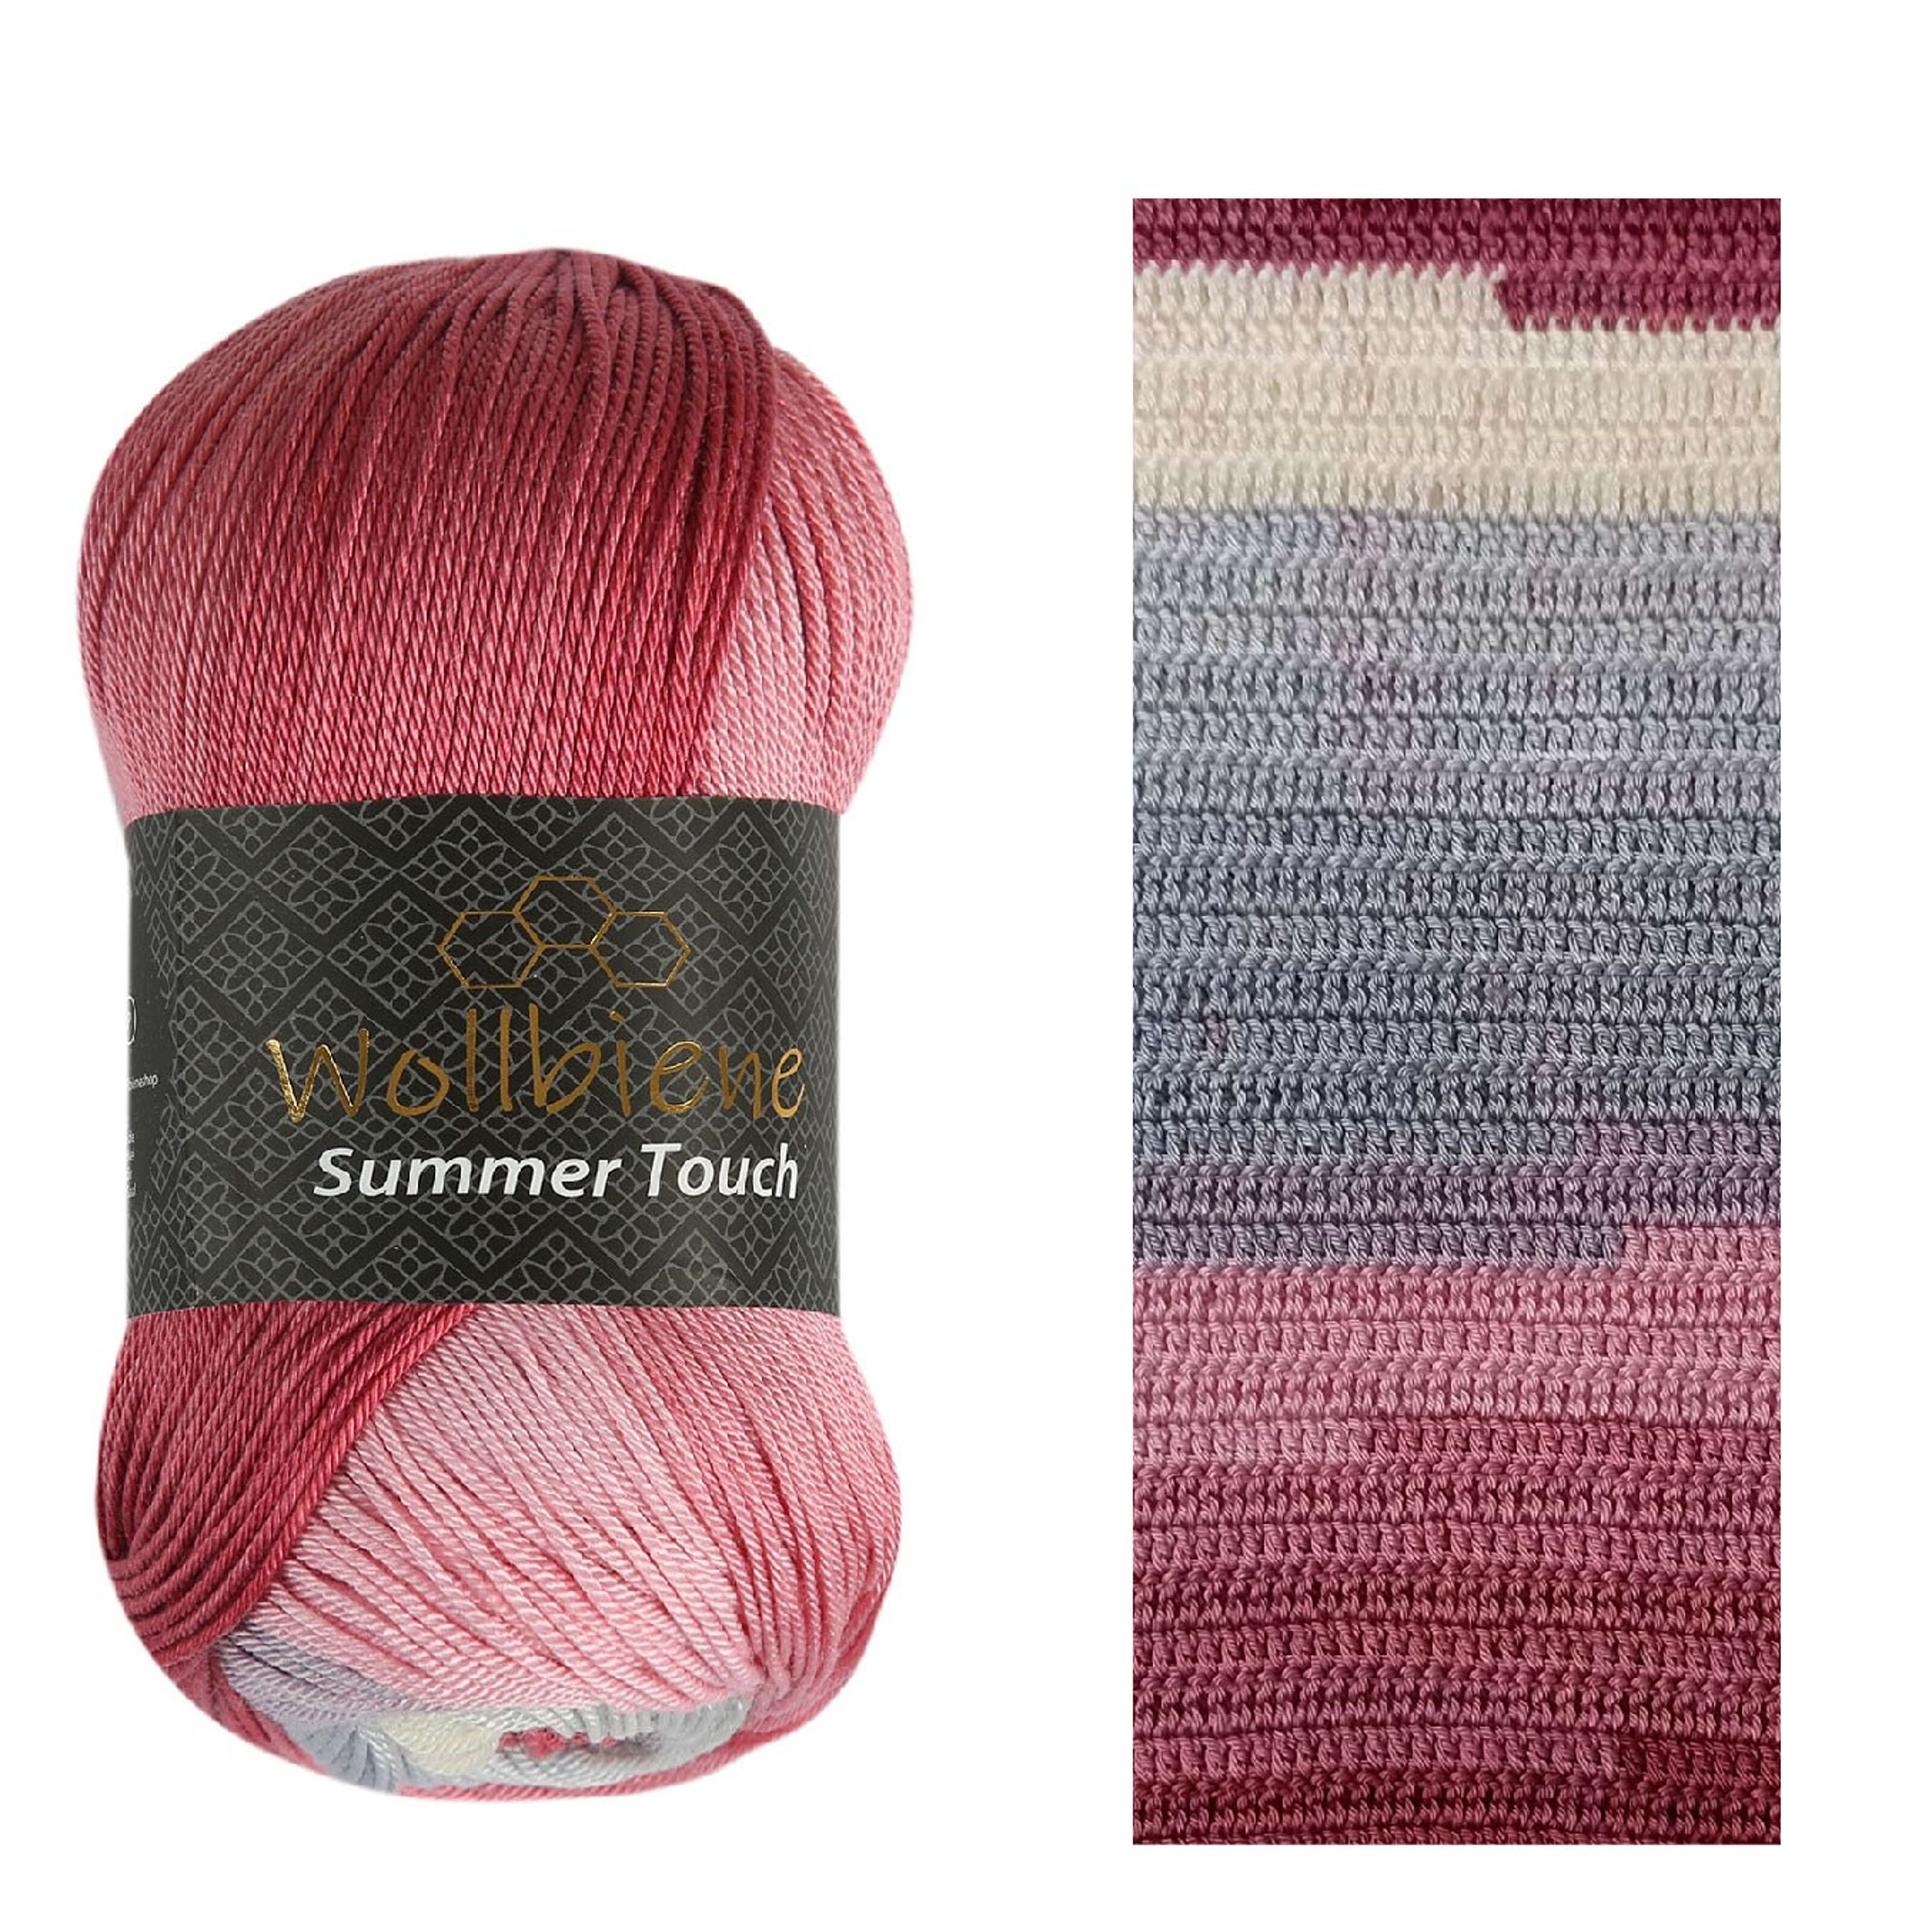 Achat Wollbiene Summer Touch 506 bleu-gris rose fil à tricoter crochet laine  en gros